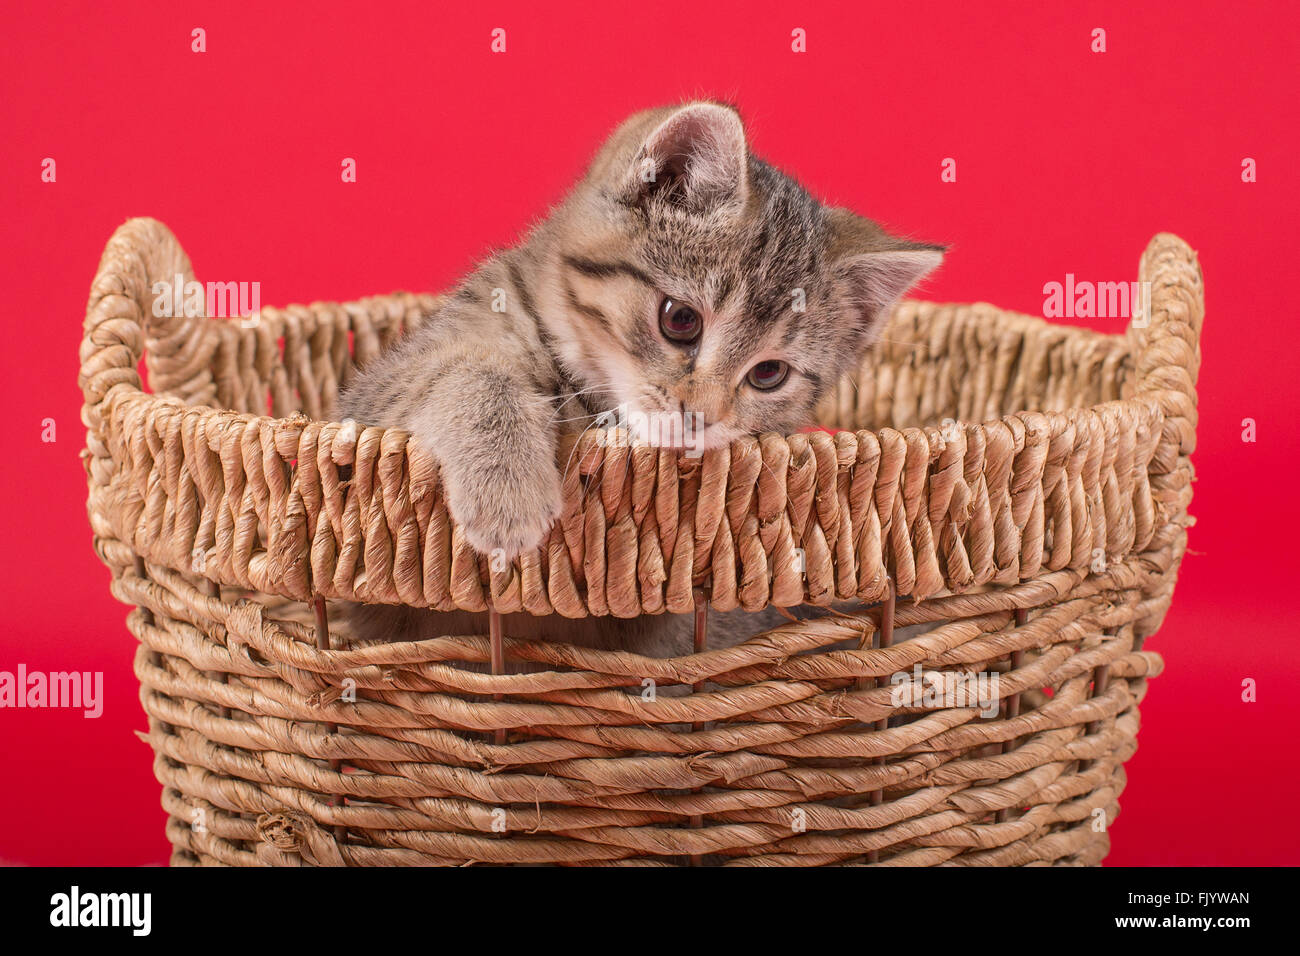 Tiger abgestreift Kätzchen im Korb mit rotem Hintergrund Stockfoto